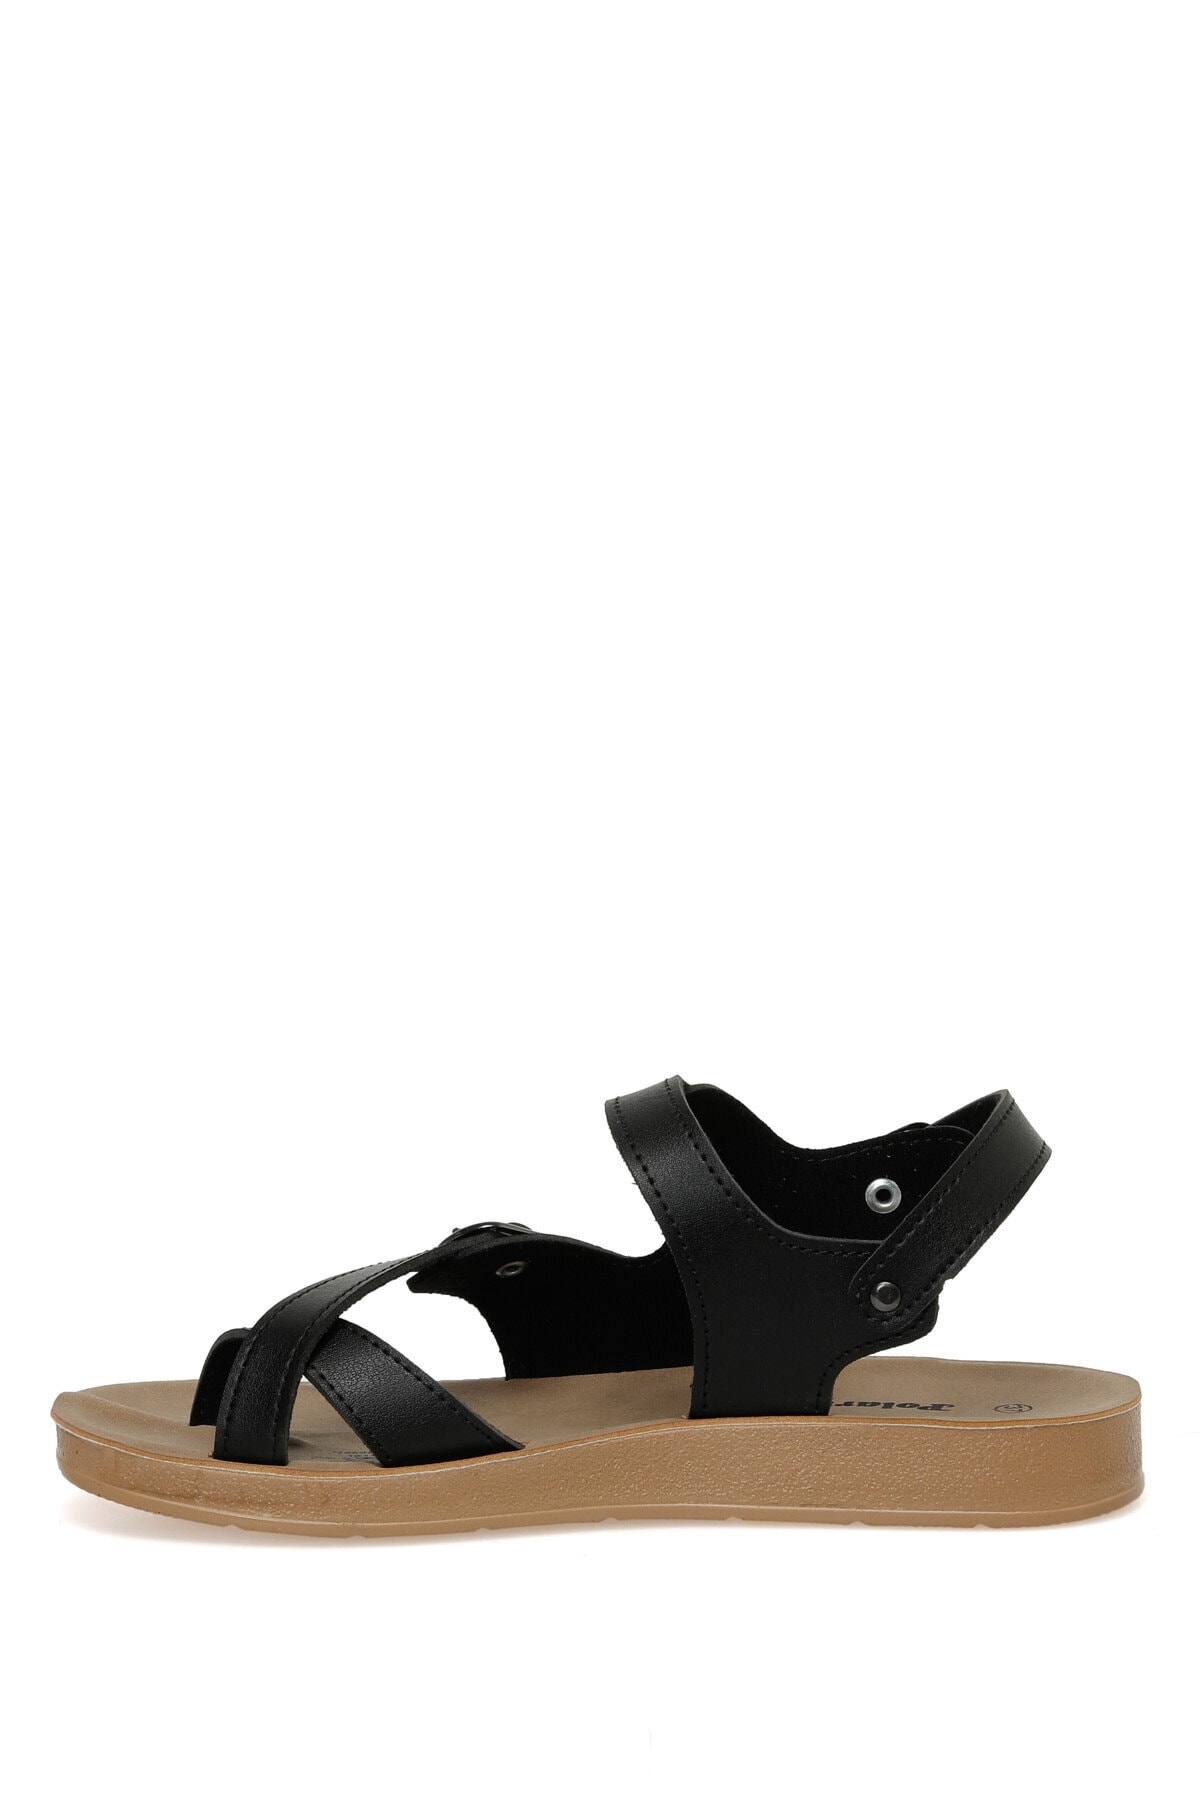 Levně Polaris 158657.z3fx Women's Black Comfort Sandals